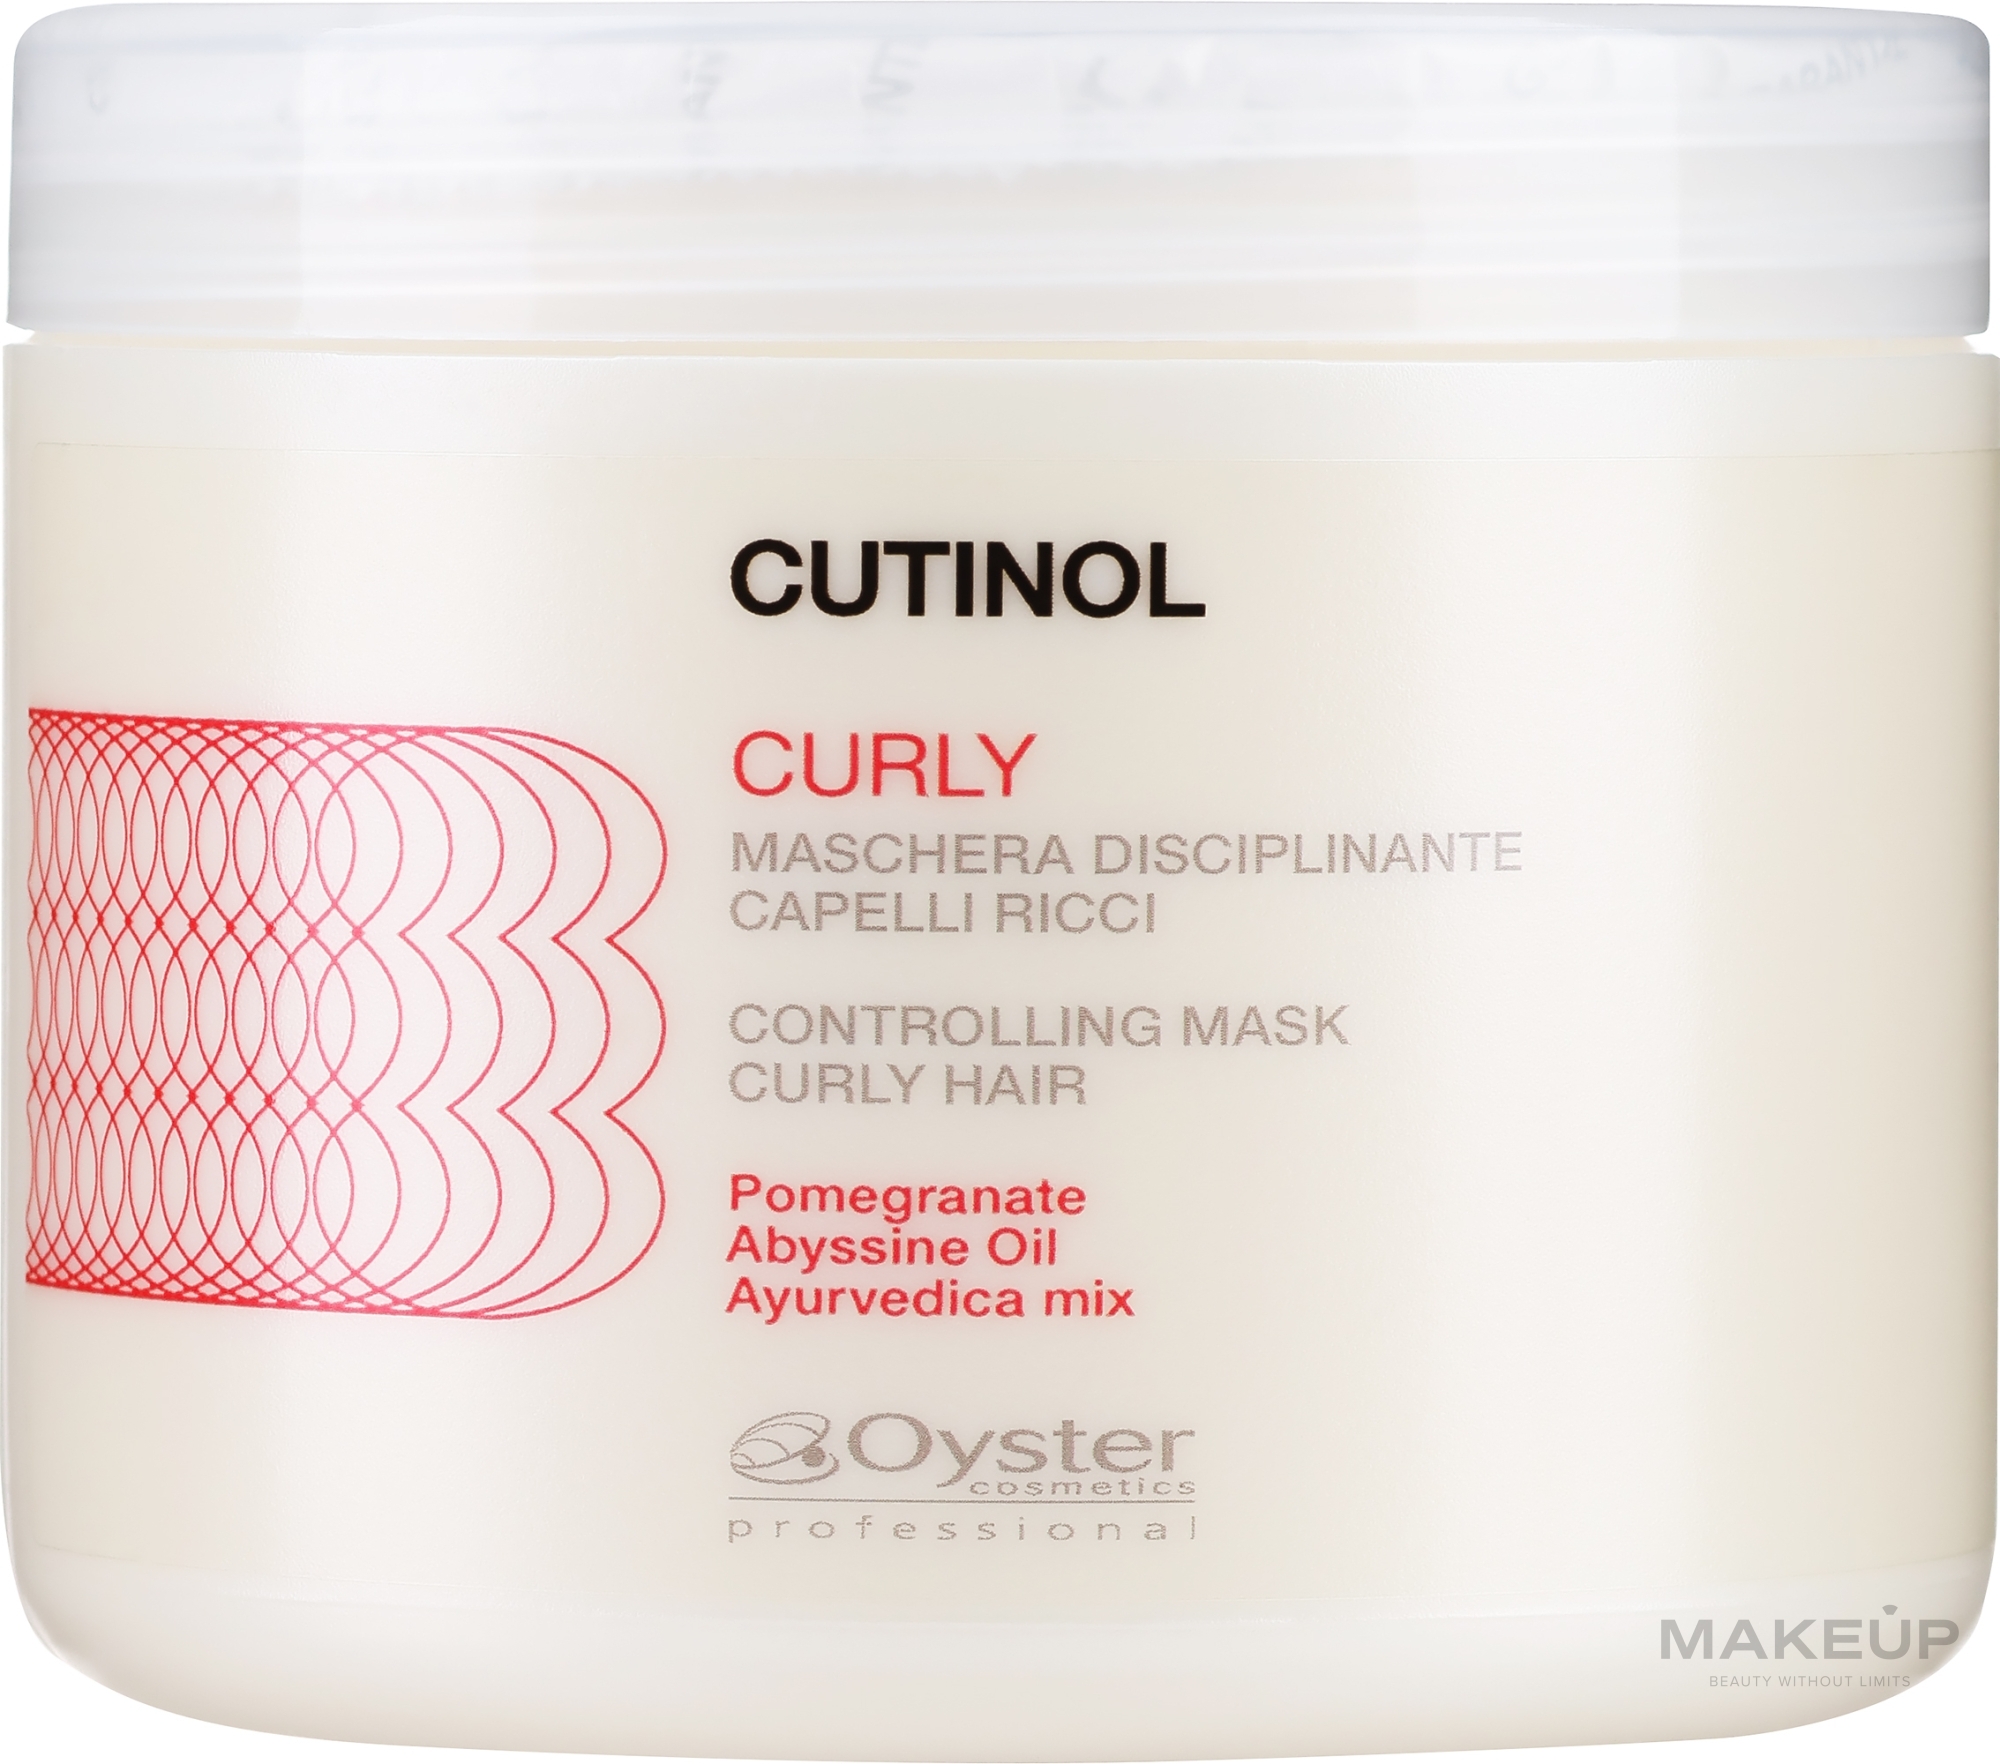 Maska do włosów kręconych z hydrolizowaną keratyną - Oyster Cosmetics Cutinol Curly Mask — Zdjęcie 500 ml